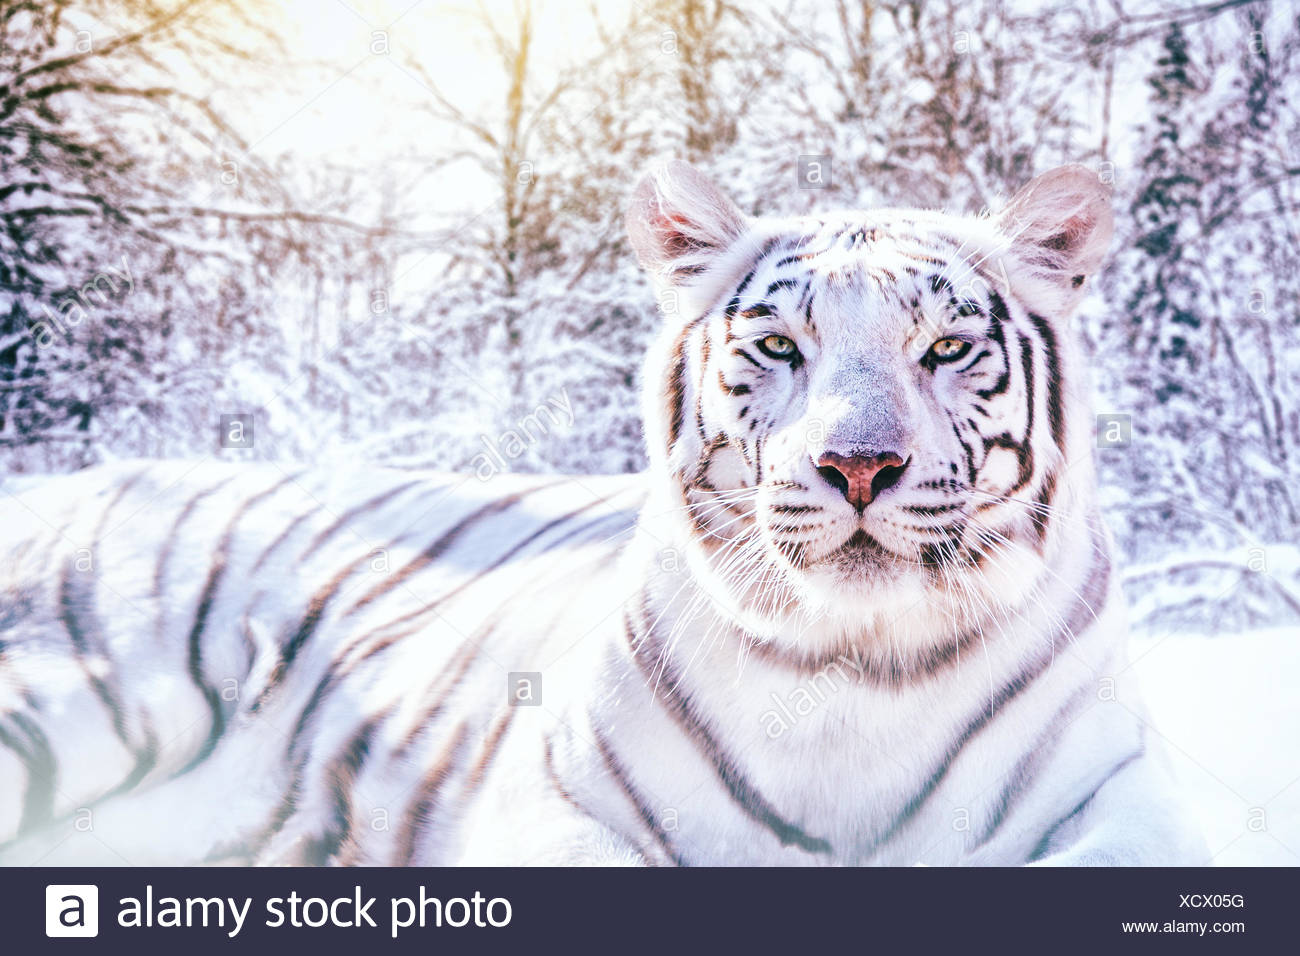 Portrait D Un Tigre Blanc Dans La Foret Enneigee Image Composite Photo Stock Alamy